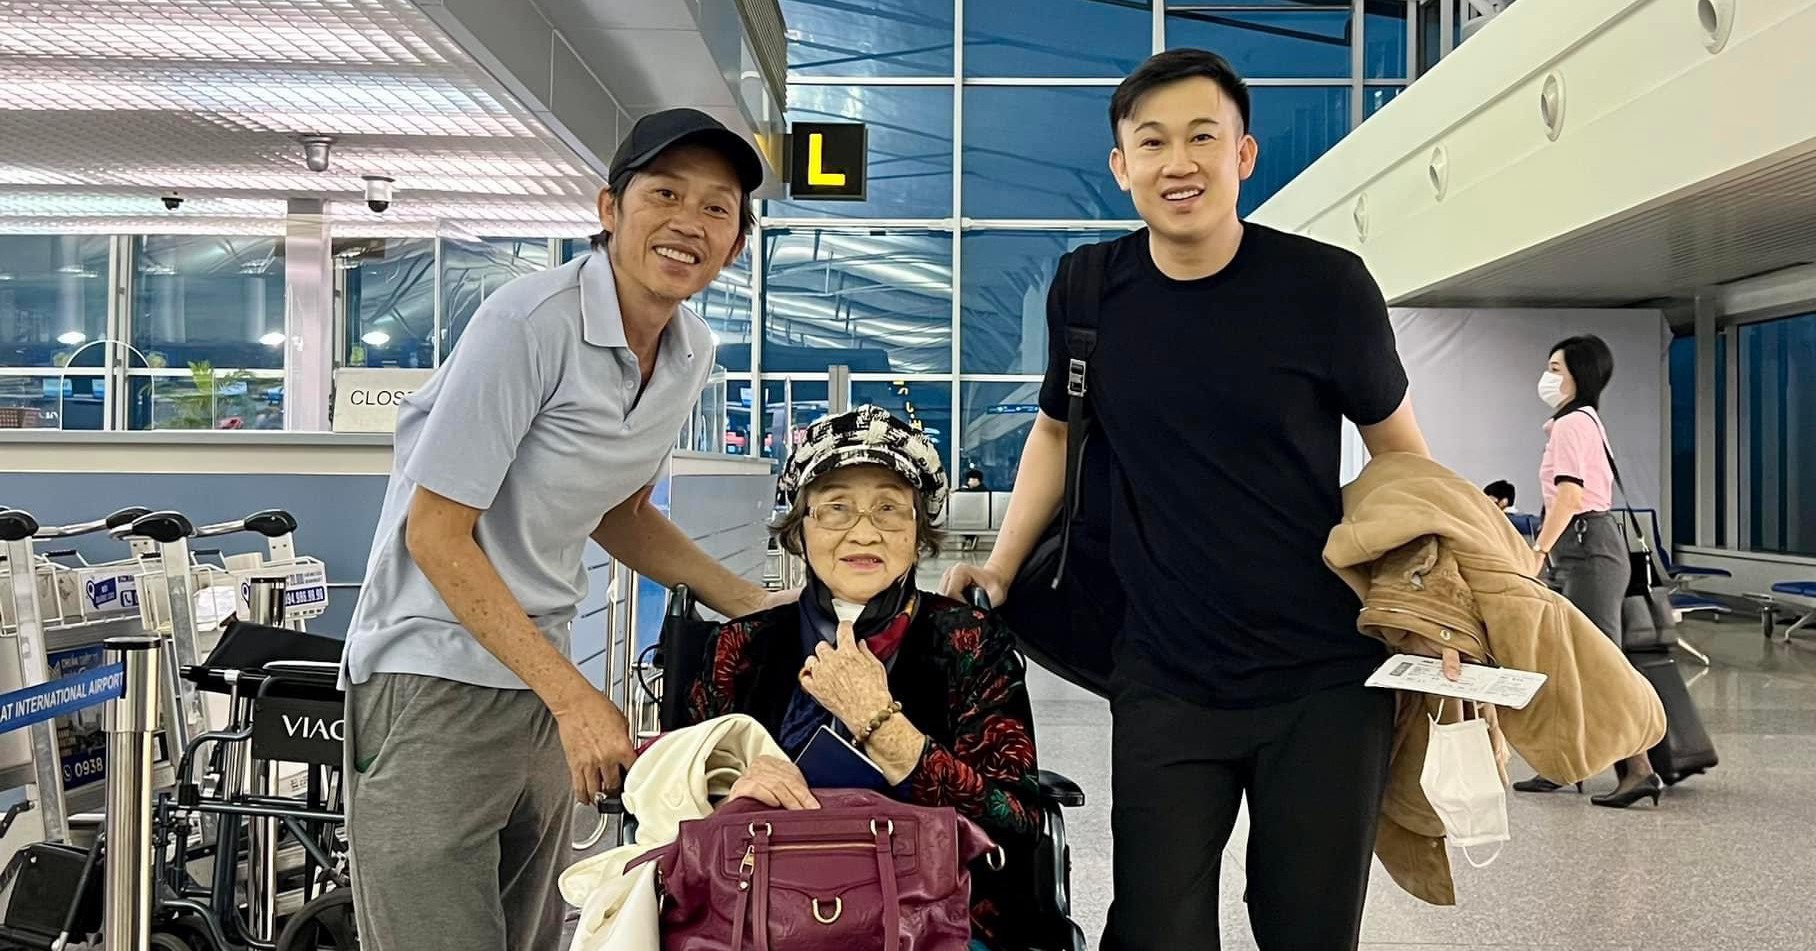 Hoài Linh xuất hiện tại sân bay với hình ảnh gầy rộc, hom hem khó nhận ra